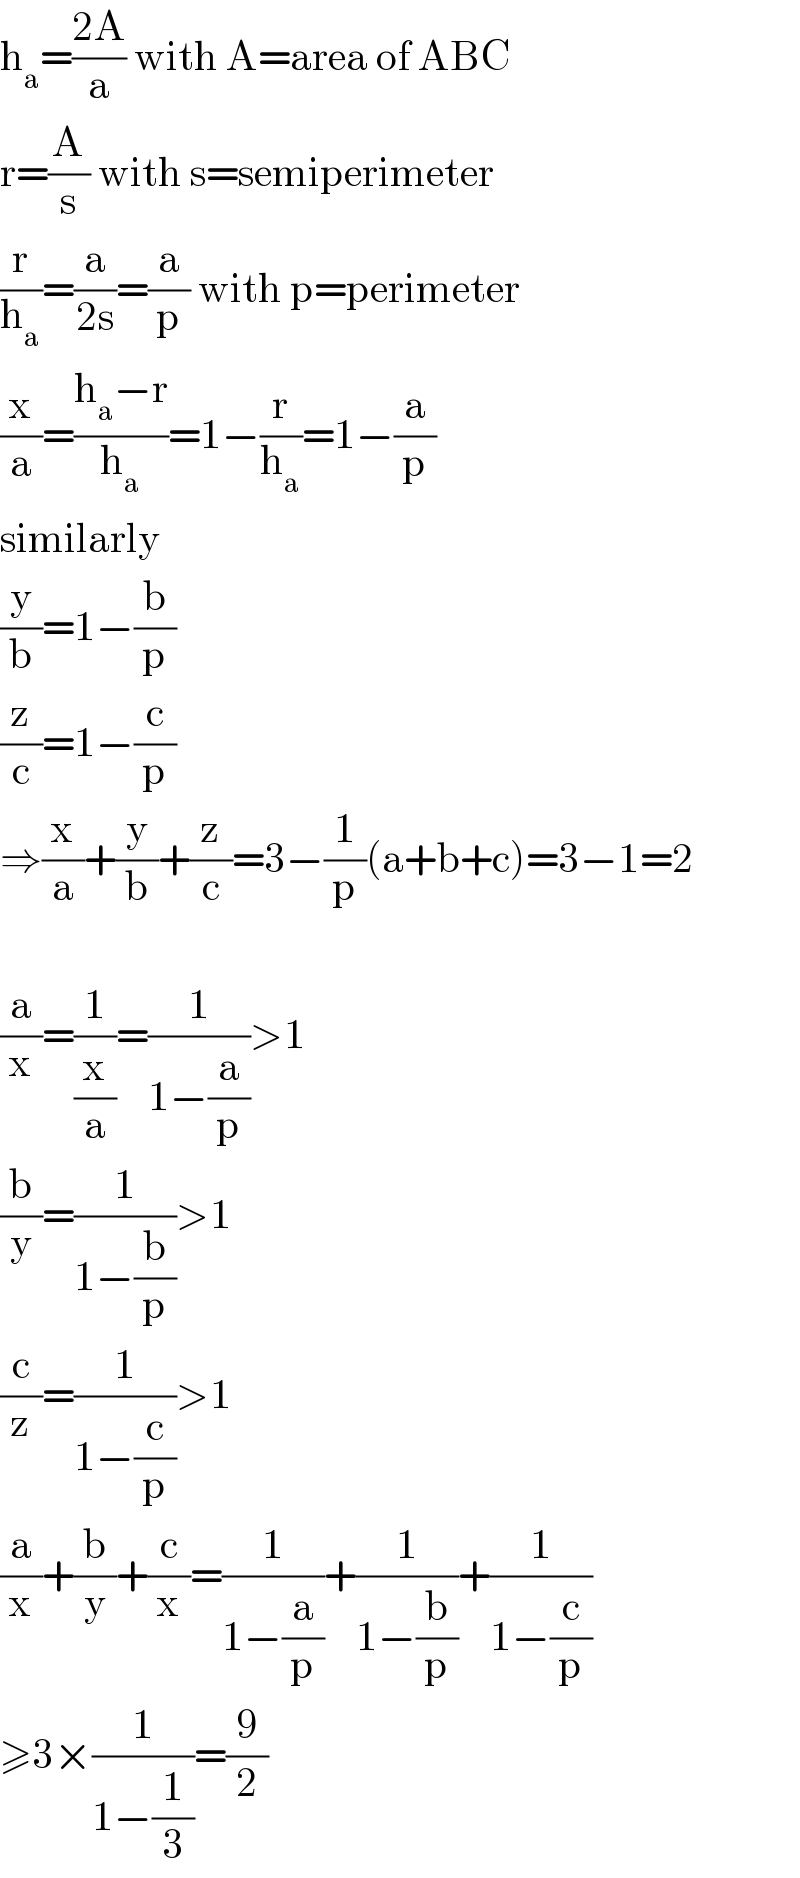 h_a =((2A)/a) with A=area of ABC  r=(A/s) with s=semiperimeter  (r/h_a )=(a/(2s))=(a/p) with p=perimeter  (x/a)=((h_a −r)/h_a )=1−(r/h_a )=1−(a/p)  similarly  (y/b)=1−(b/p)  (z/c)=1−(c/p)  ⇒(x/a)+(y/b)+(z/c)=3−(1/p)(a+b+c)=3−1=2    (a/x)=(1/(x/a))=(1/(1−(a/p)))>1  (b/y)=(1/(1−(b/p)))>1  (c/z)=(1/(1−(c/p)))>1  (a/x)+(b/y)+(c/x)=(1/(1−(a/p)))+(1/(1−(b/p)))+(1/(1−(c/p)))  ≥3×(1/(1−(1/3)))=(9/2)  